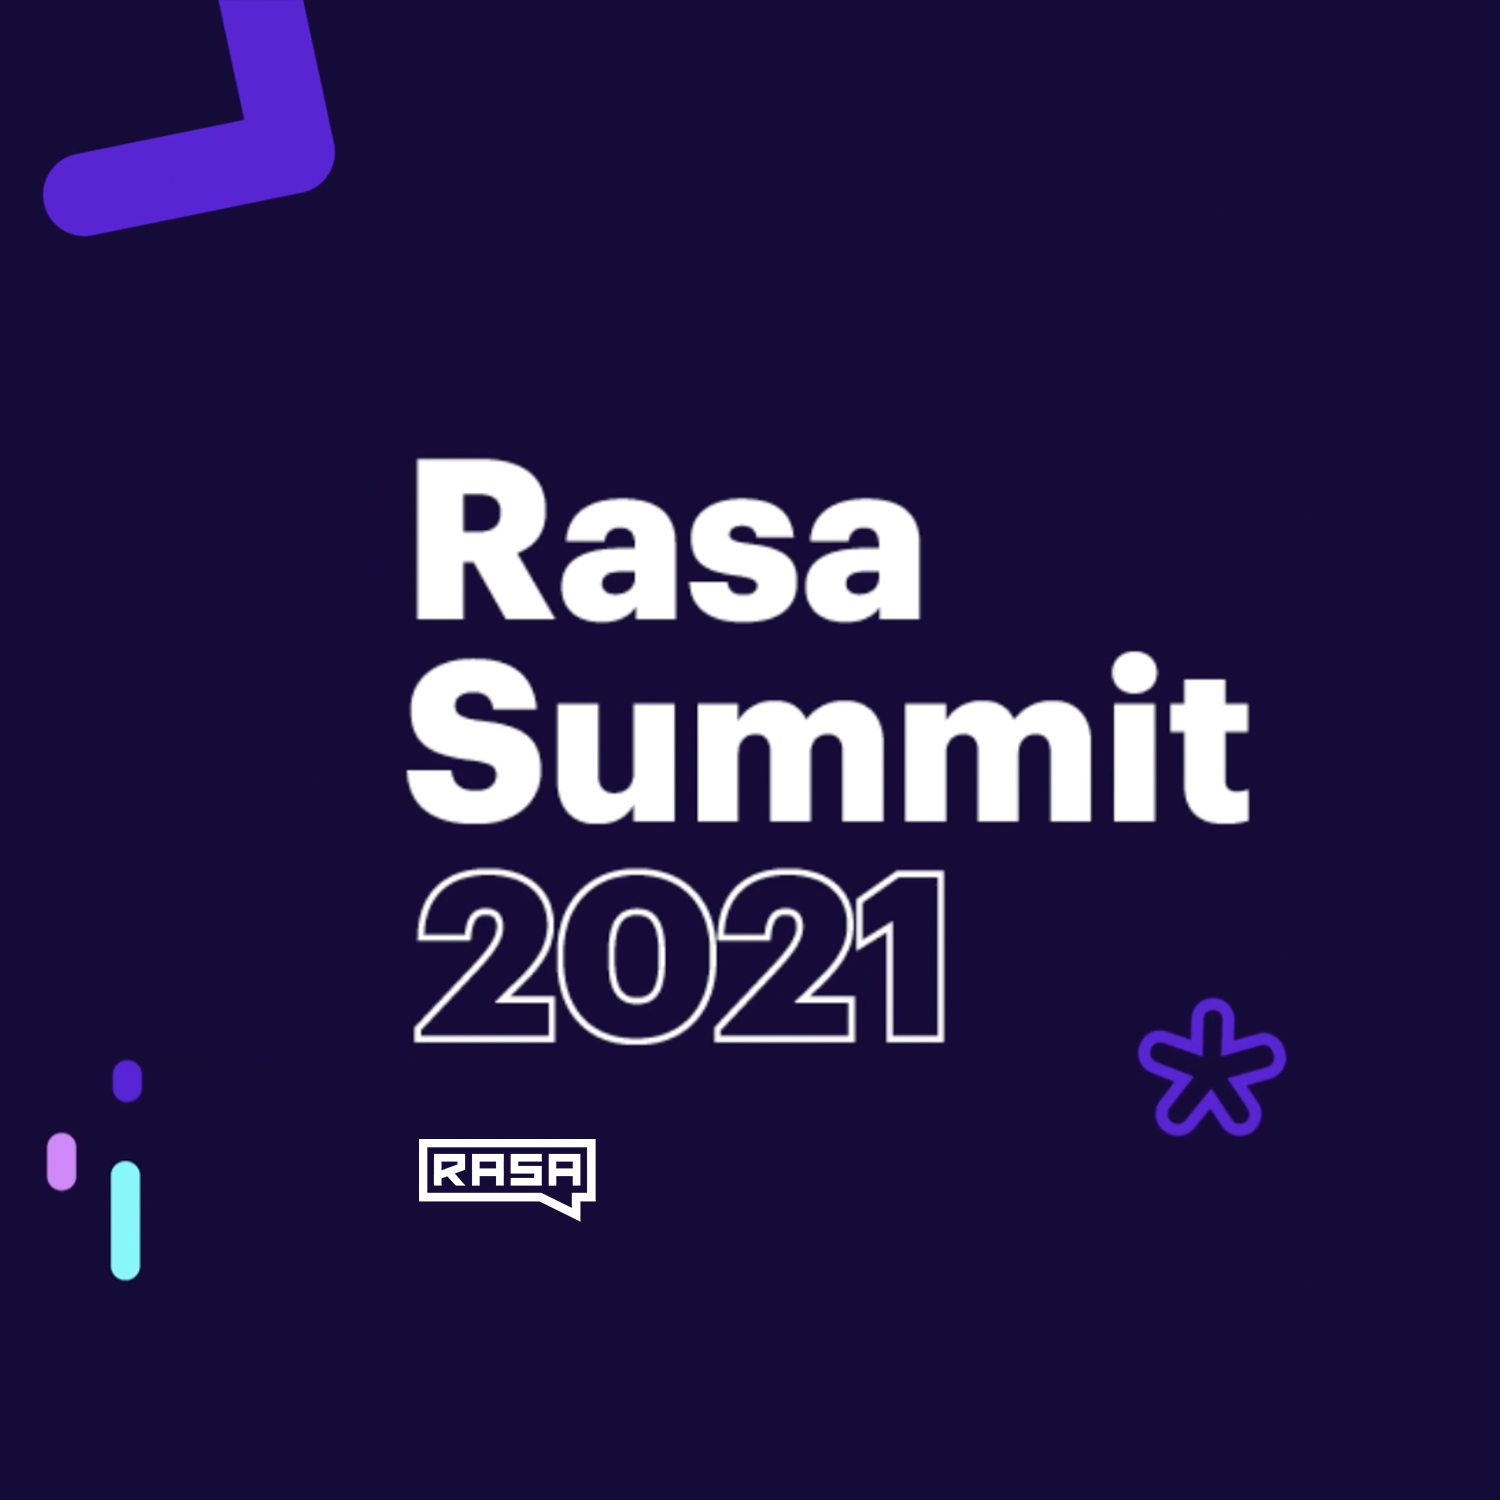 Rasa — Summit Teaser